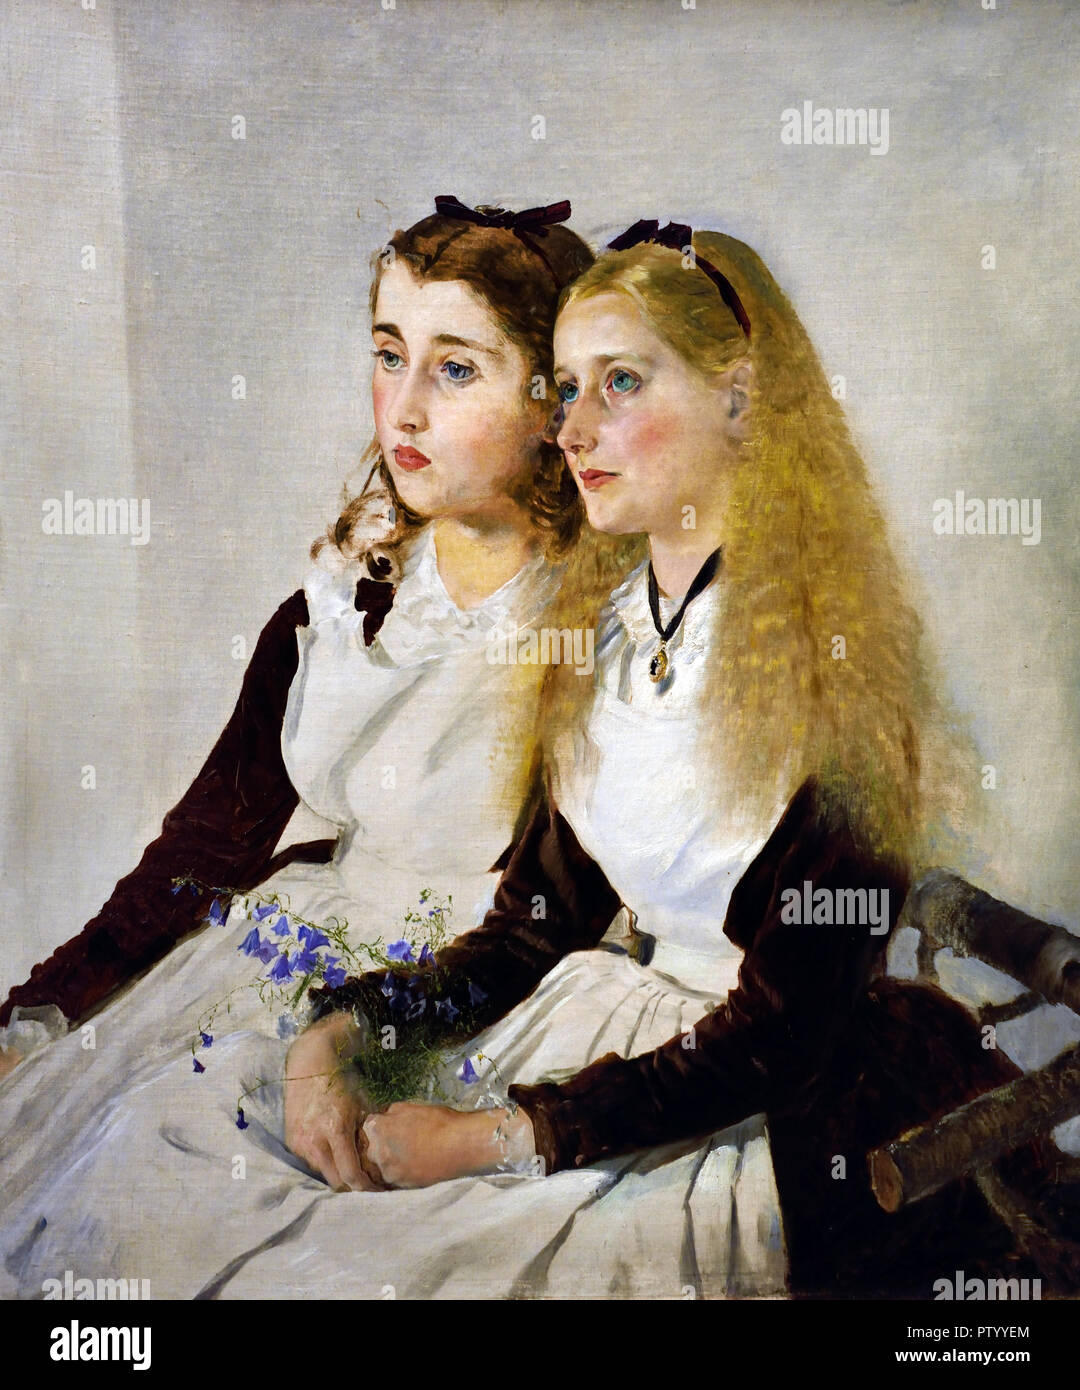 L'artista nipotine, Elisabeth e Maja, 1872/73 da Anton Romako 1832 - 1889 pittore austriaco. Austria . ( Anton Romako è stato uno dei grandi pionieri del modernismo ) Foto Stock